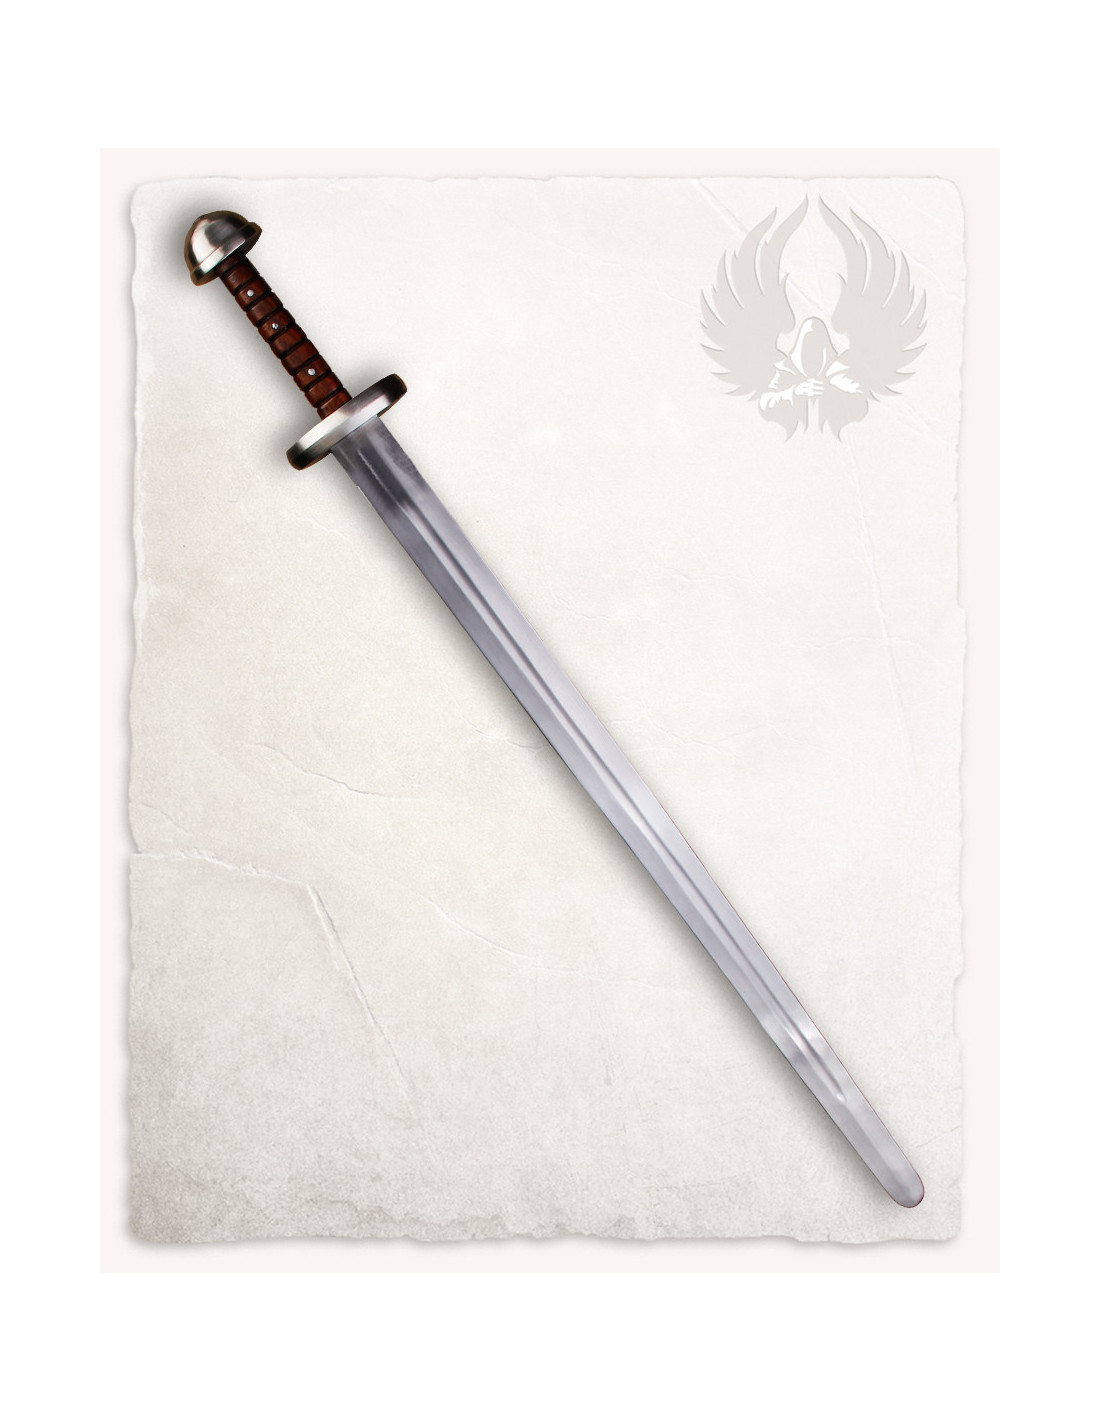 Medieval Tjure Sword For Stage Fighting 93 Cm ⚔️ Medieval Shop